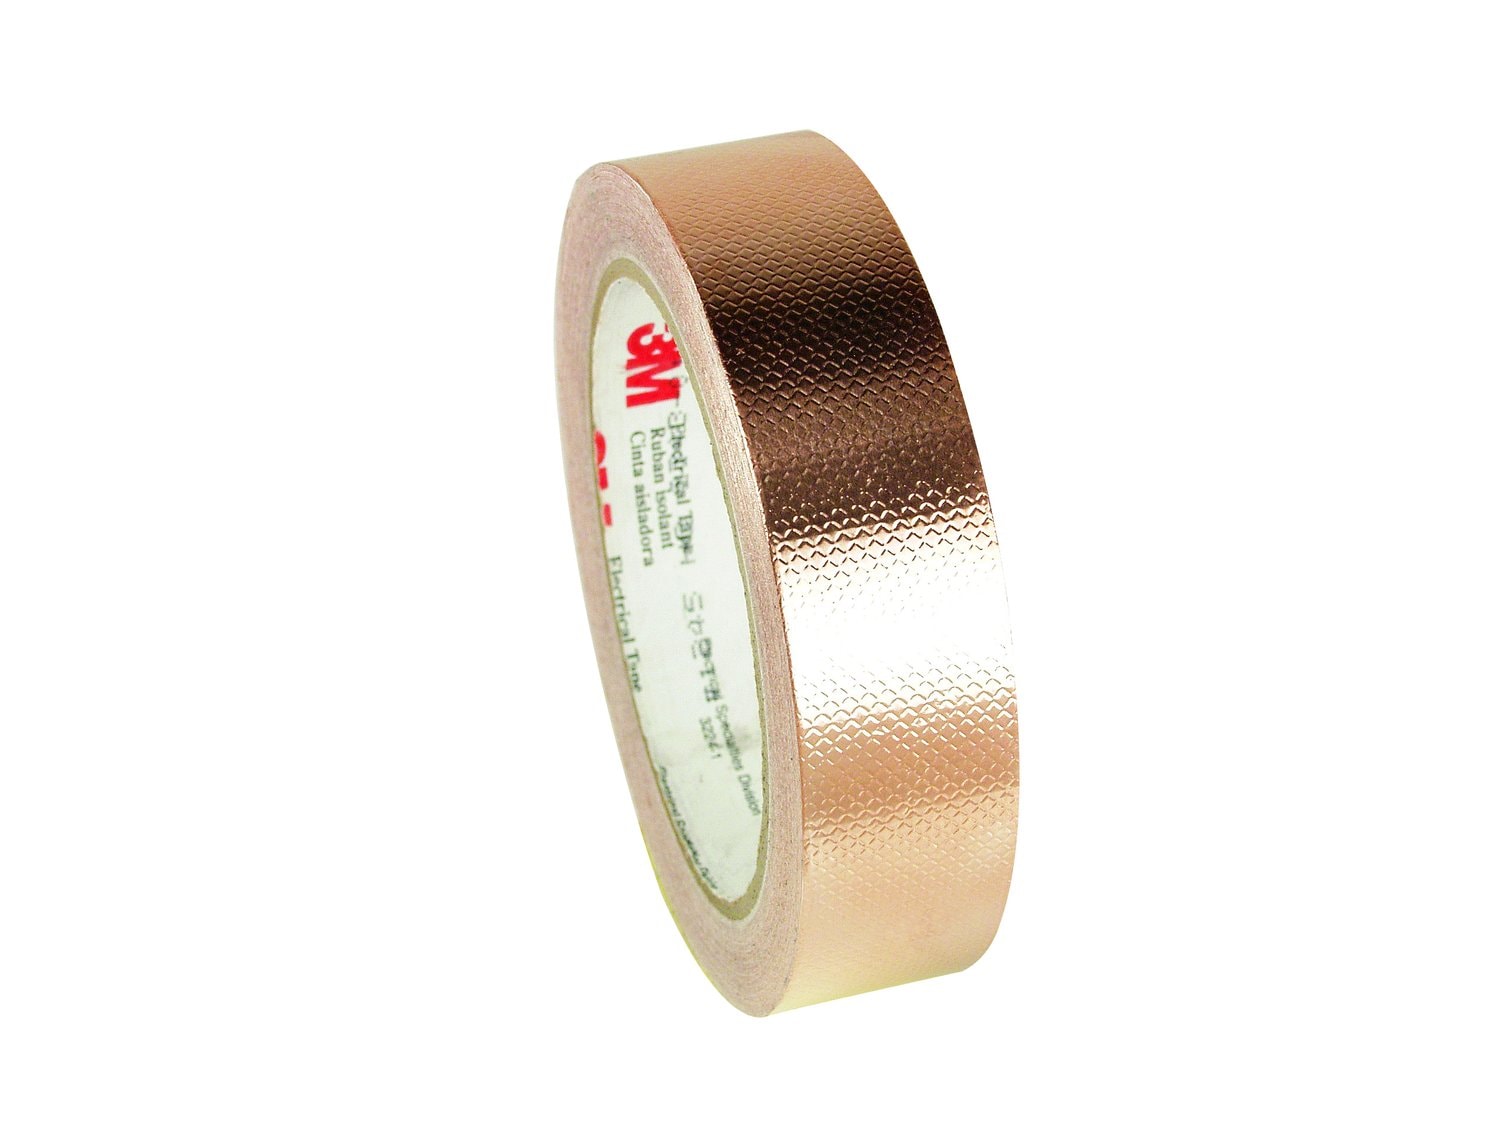 7000140703 - 3M Embossed Copper Foil EMI Shielding Tape 1245, 1/2 in x 18 yd, 3 in
Paper Core, 18 Rolls/Case